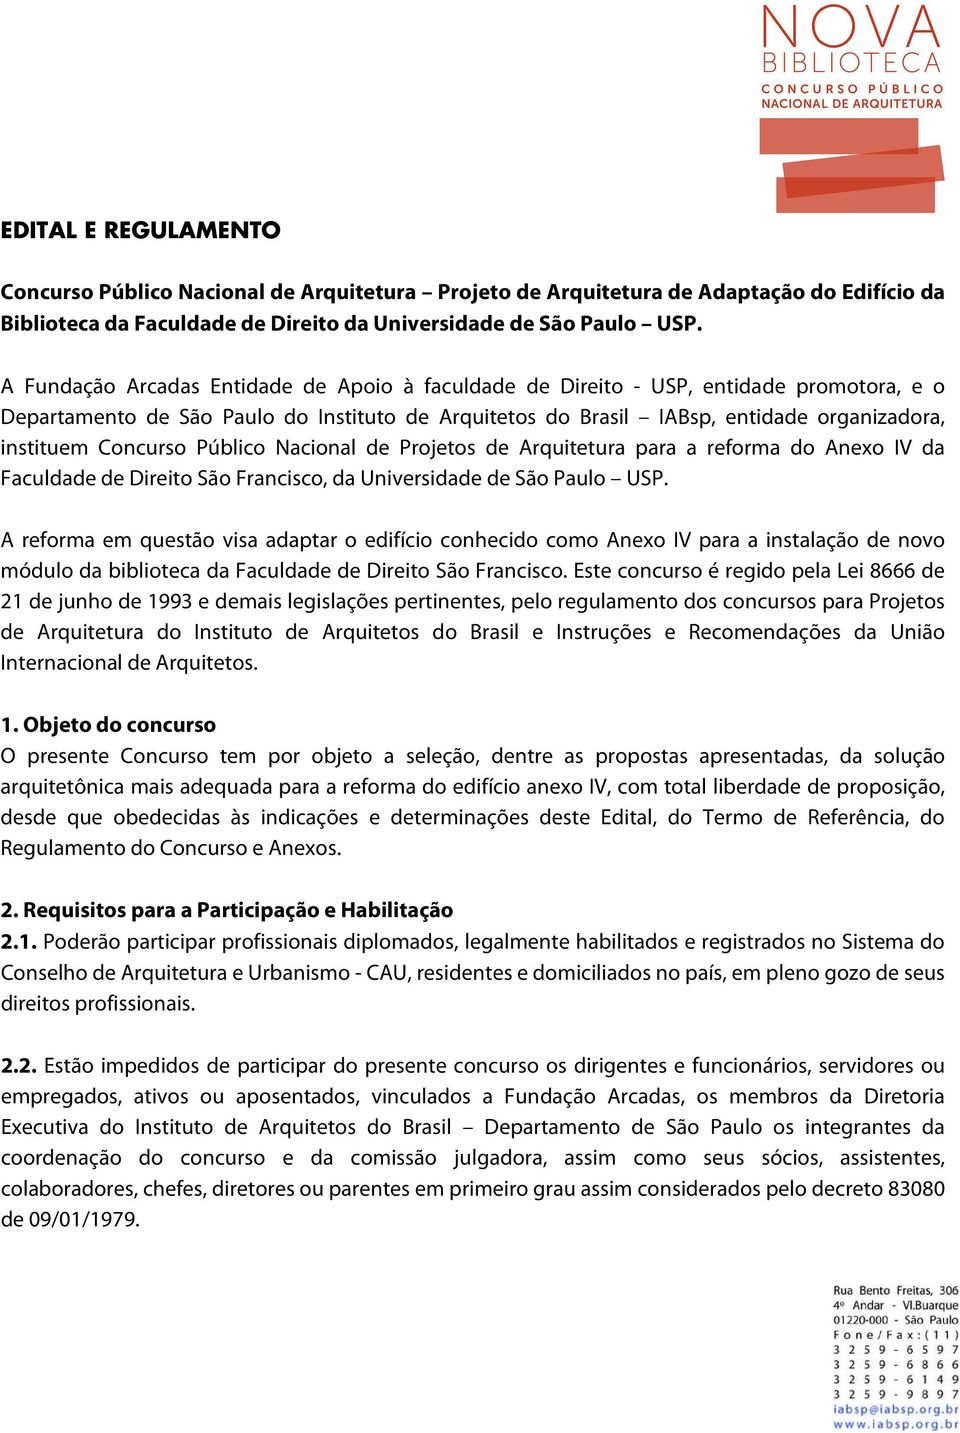 Concurso Público Nacional de Projetos de Arquitetura para a reforma do Anexo IV da Faculdade de Direito São Francisco, da Universidade de São Paulo USP.